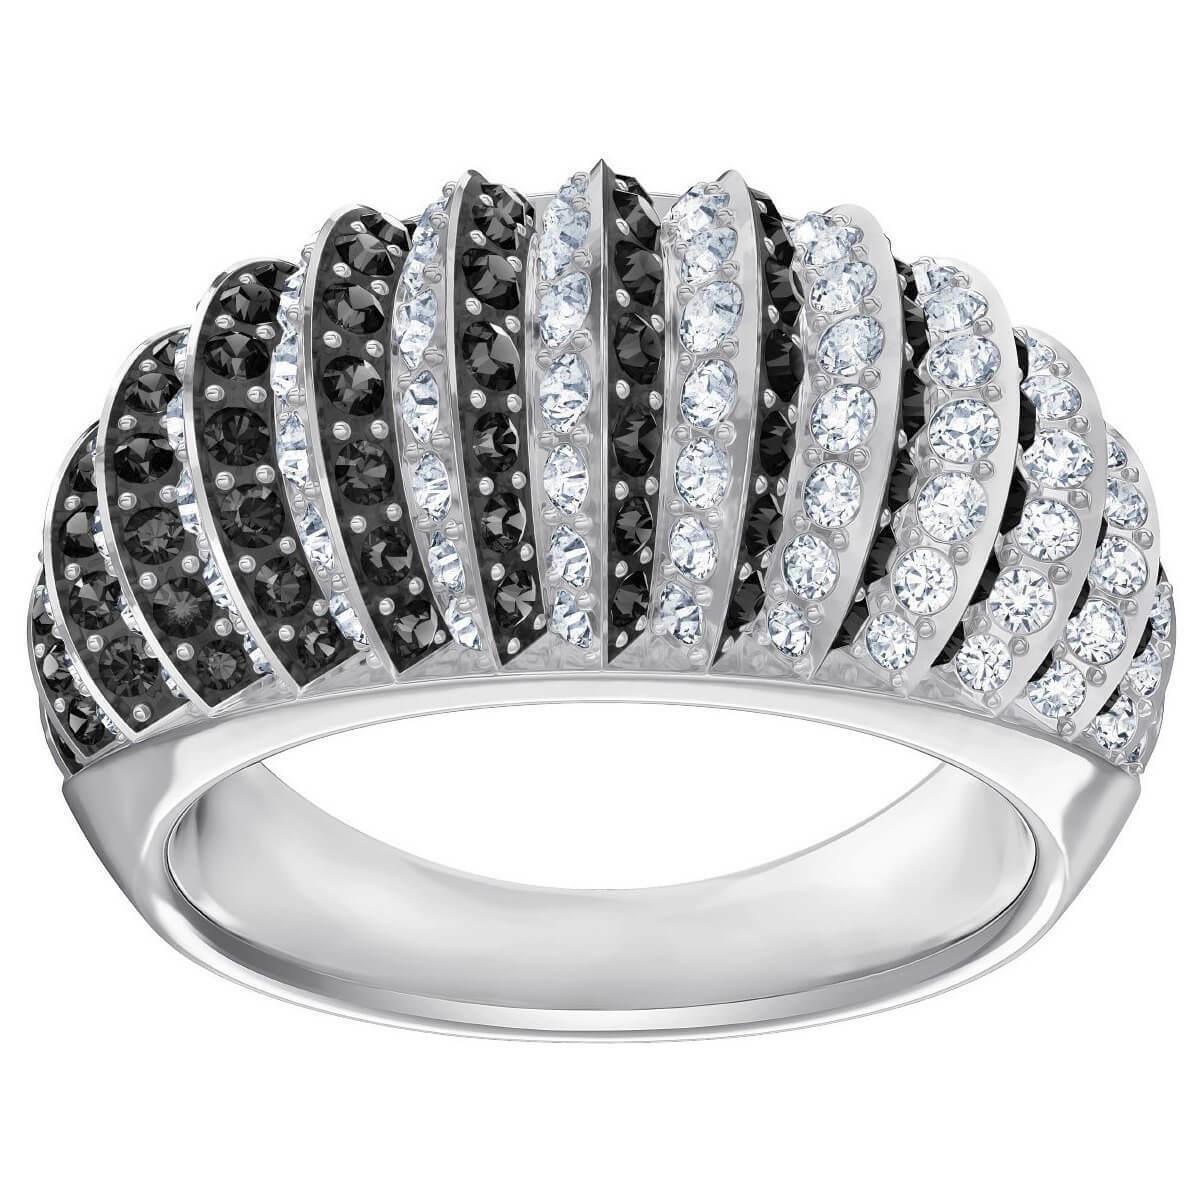 Swarovski Luxury Domed Ring Black in Rhodium - Size 6 - Rrp